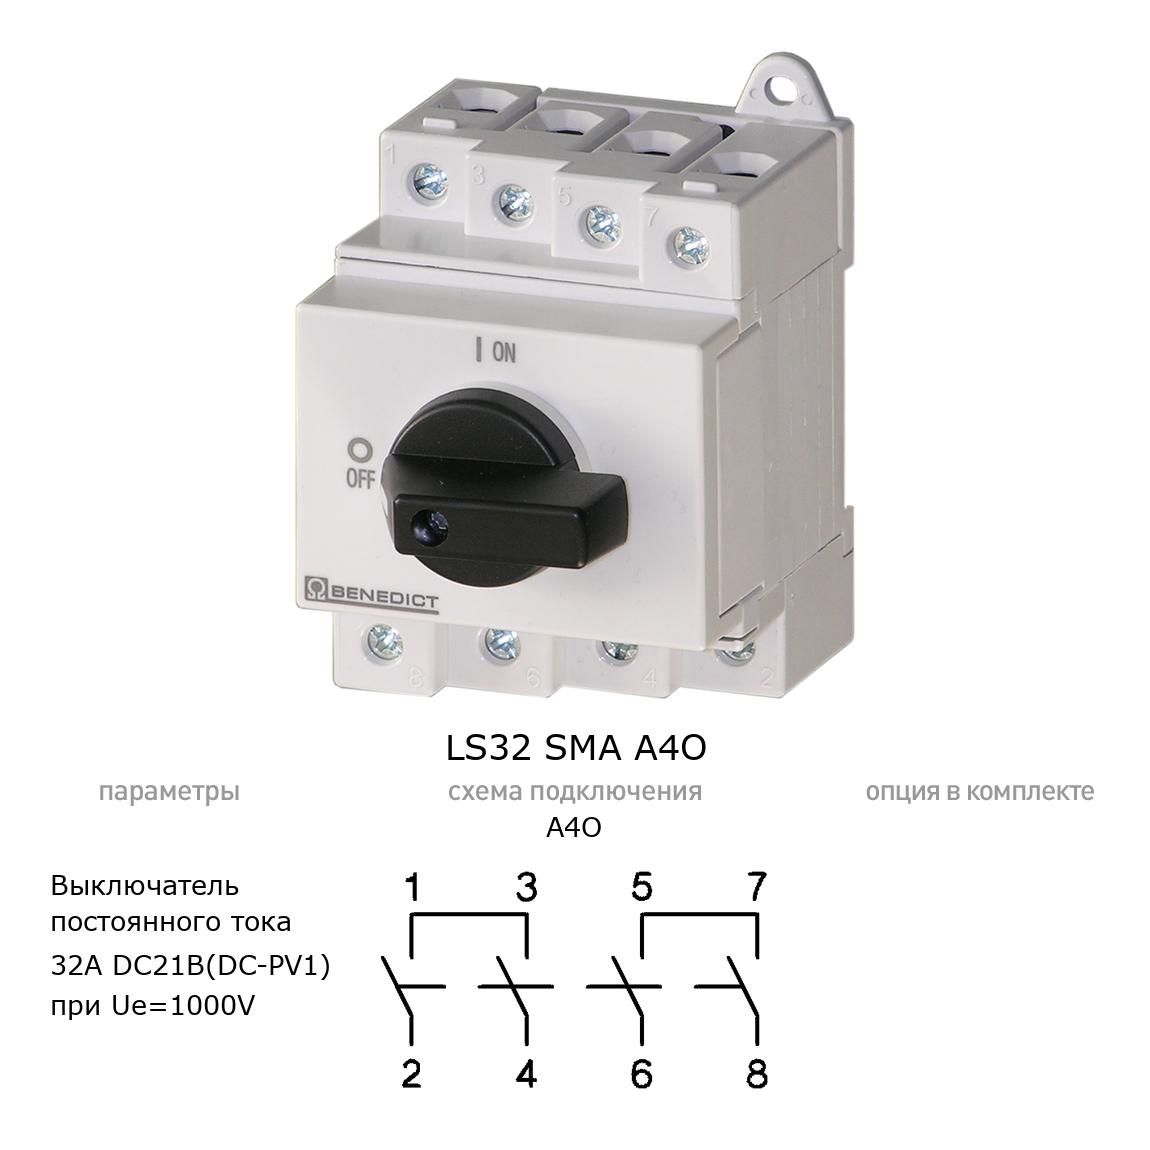 Кулачковый переключатель для постоянного тока (DC) LS32 SMA A4O BENEDICT